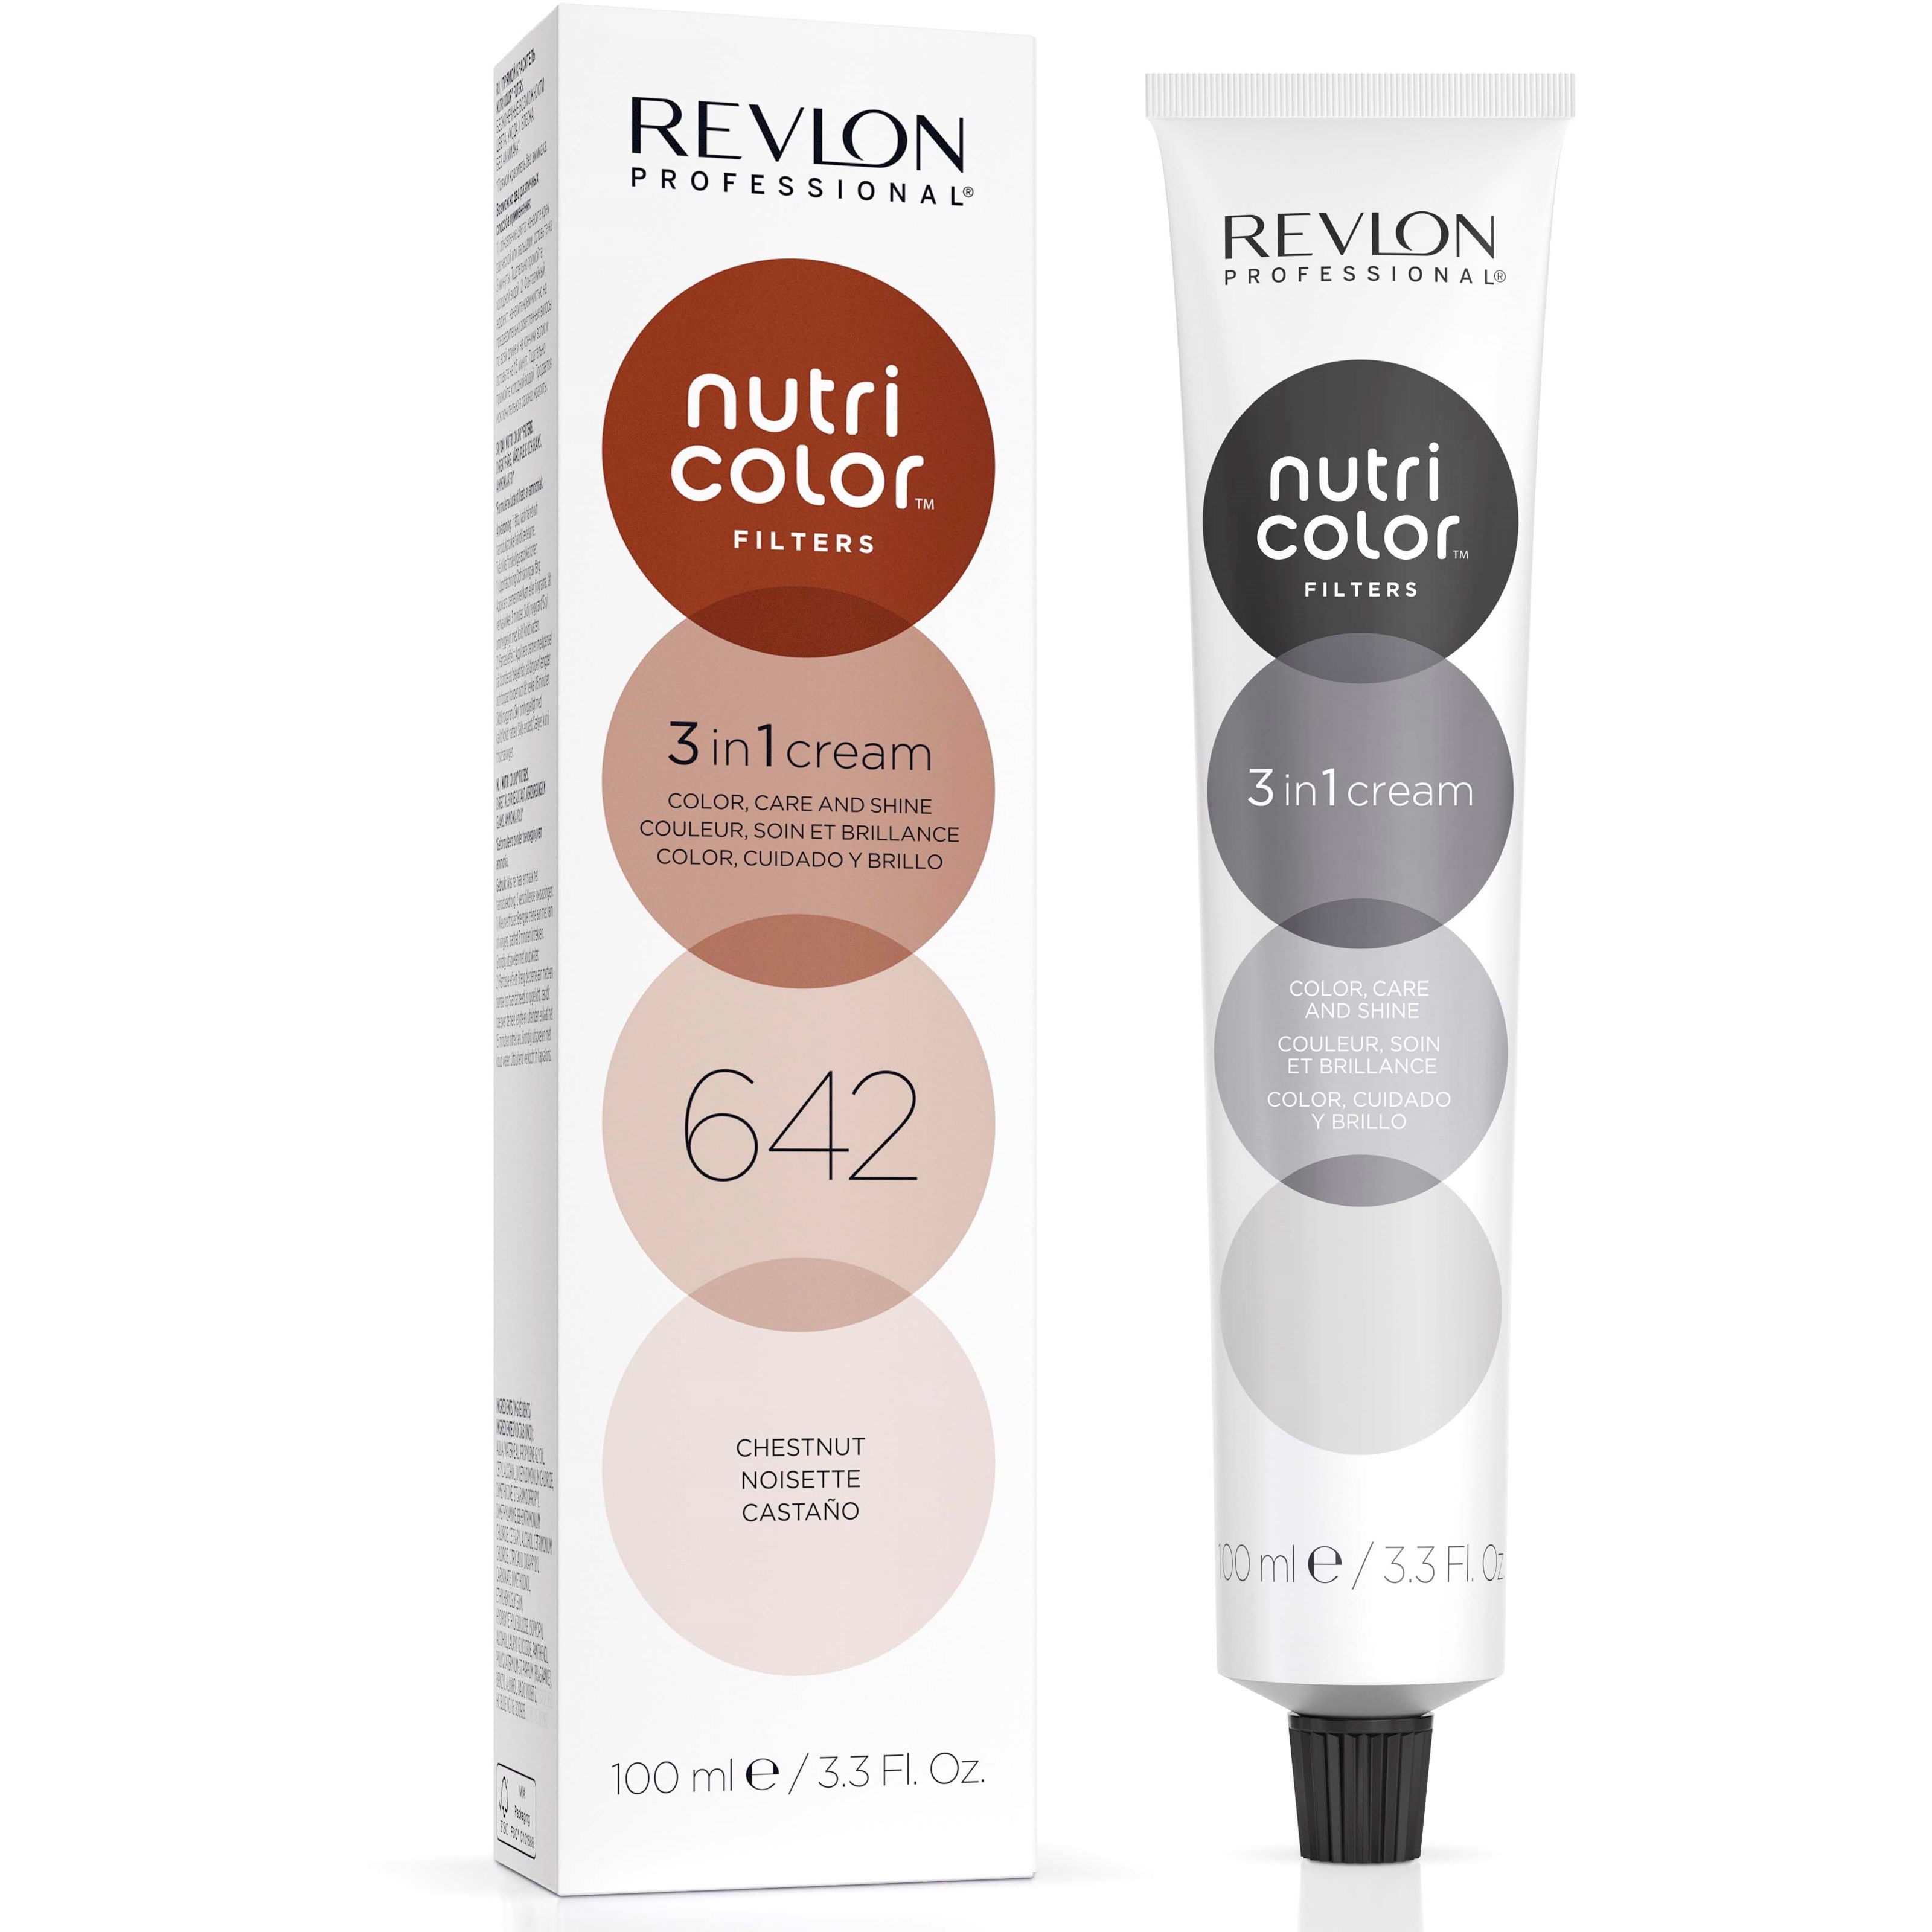 Revlon Nutri Color Filters 642 Chestnut